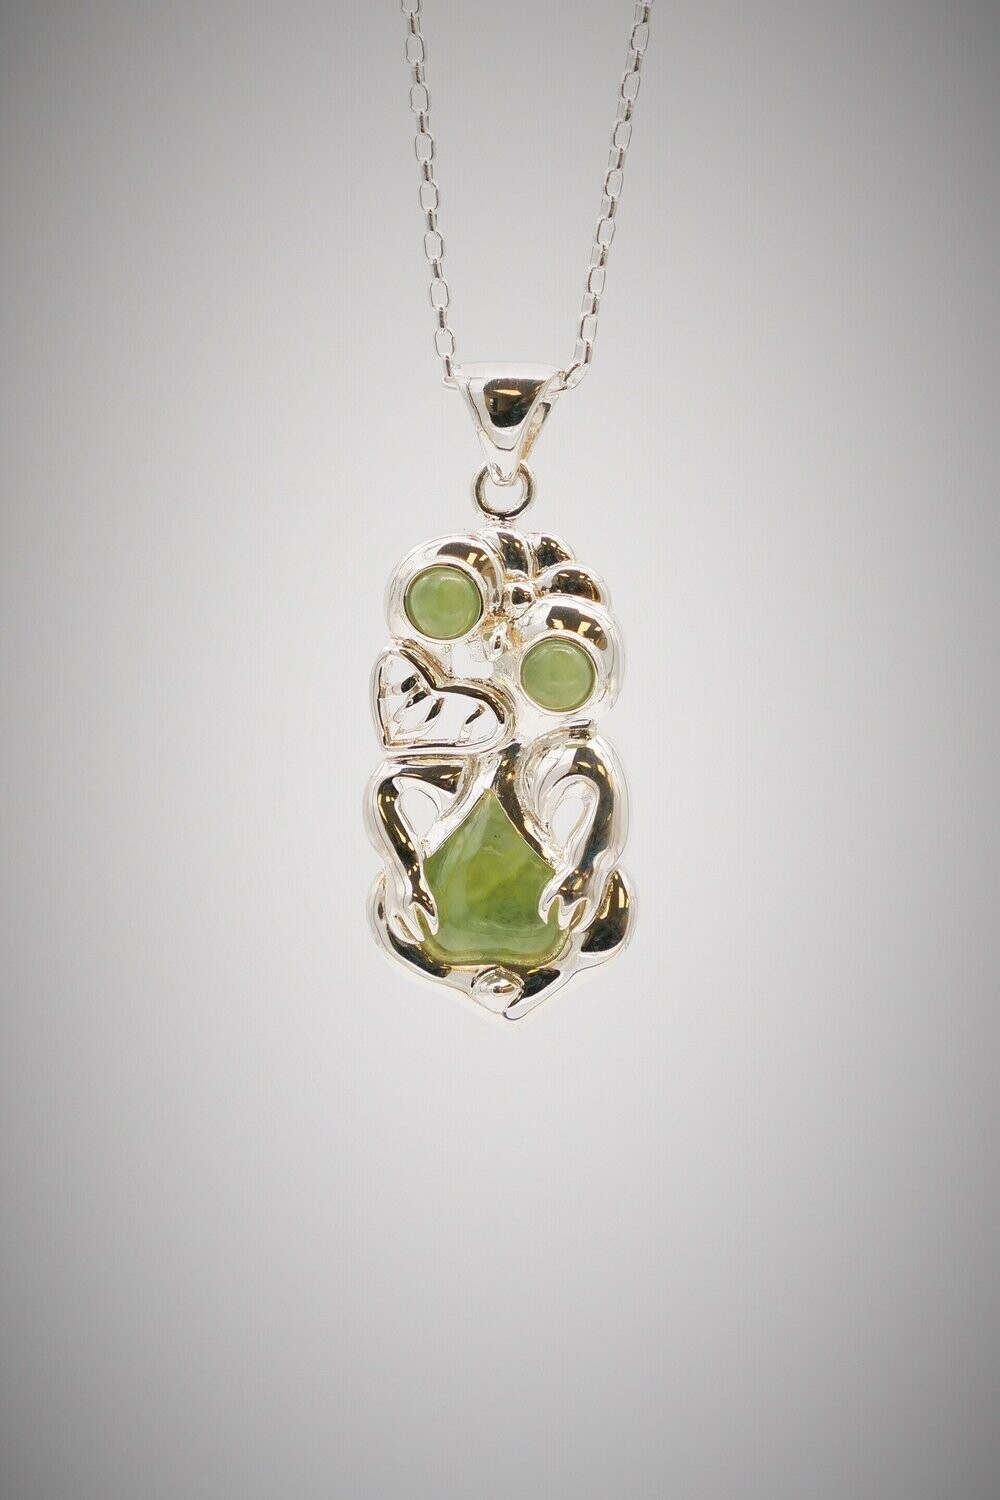 Canadian Green Nephrite Jade Hei Tiki Pendant Necklace Maori Greenstone  Pounamu - 3JADE wholesale of jade carvings, jewelry, collectables, prayer  beads